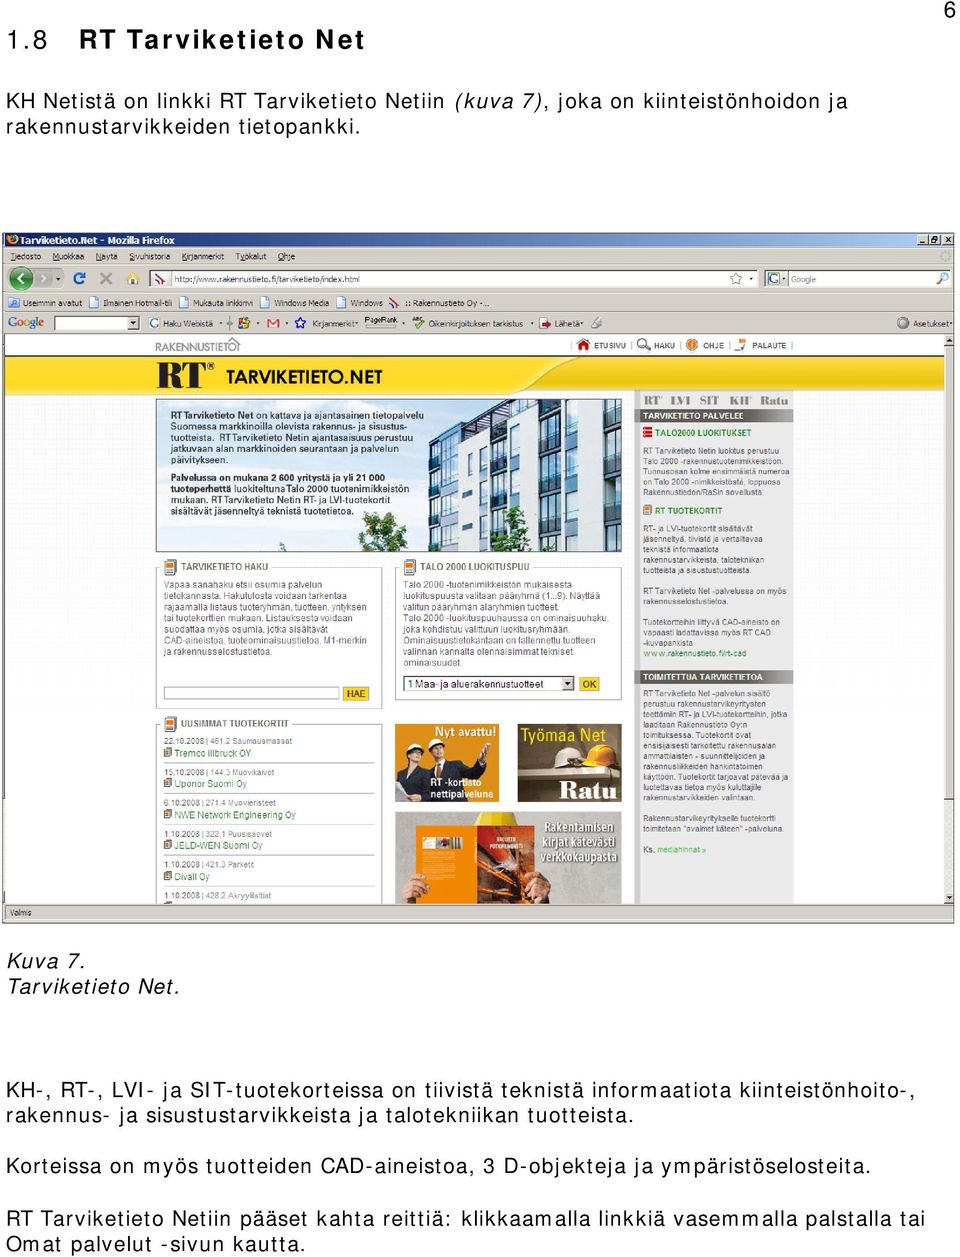 KH-, RT-, LVI- ja SIT-tuotekorteissa on tiivistä teknistä informaatiota kiinteistönhoito-, rakennus- ja sisustustarvikkeista ja